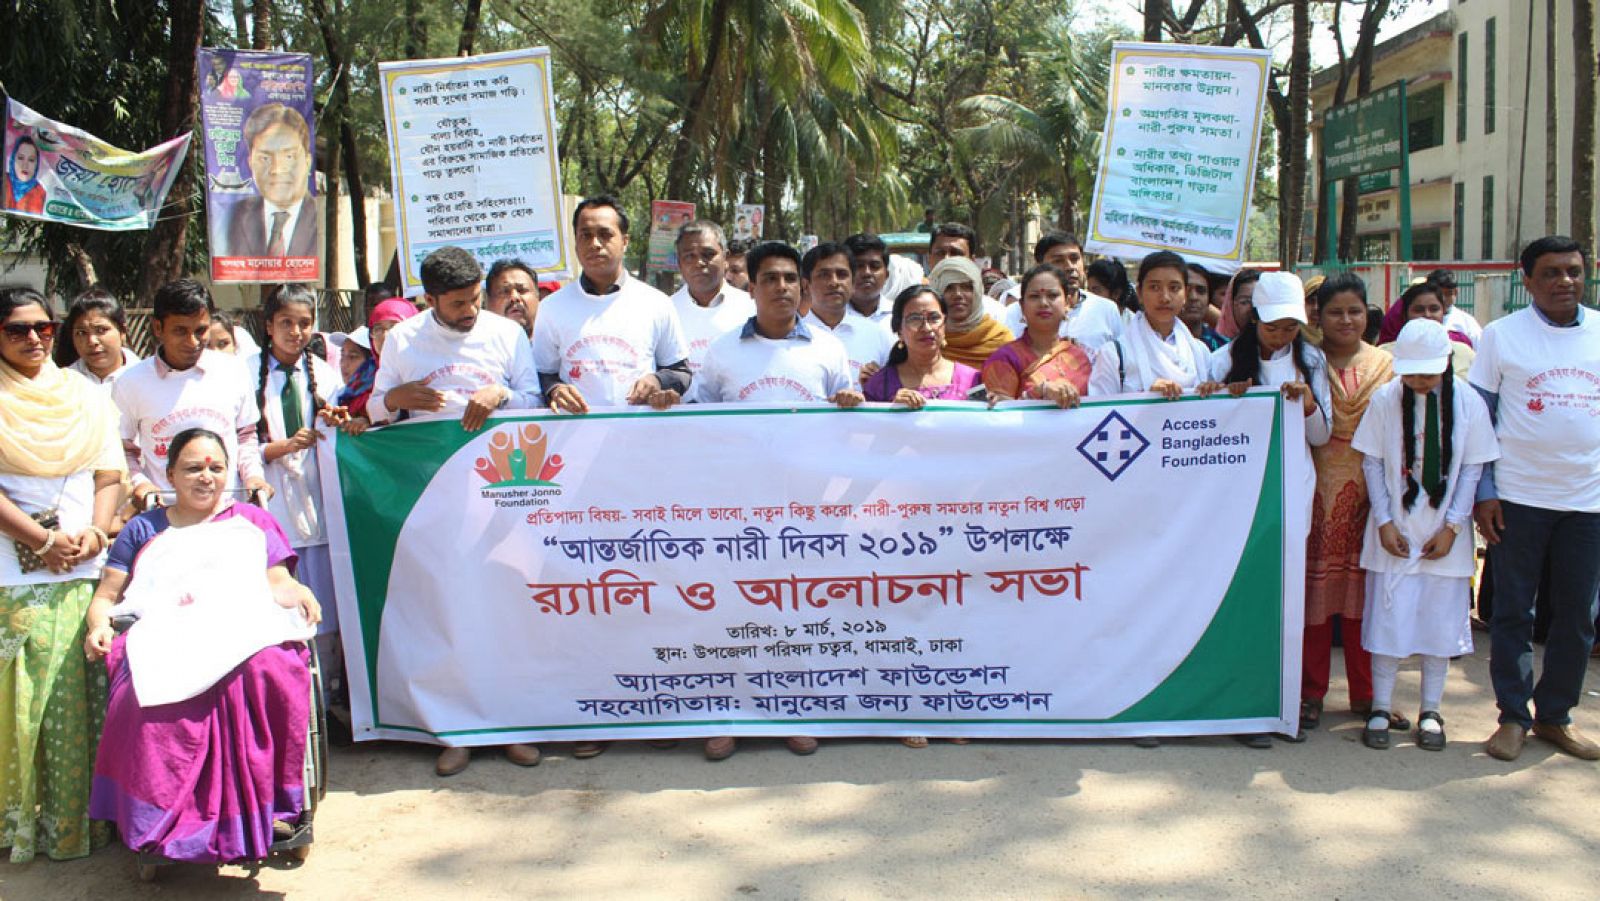 La discapacidad en Bangladesh